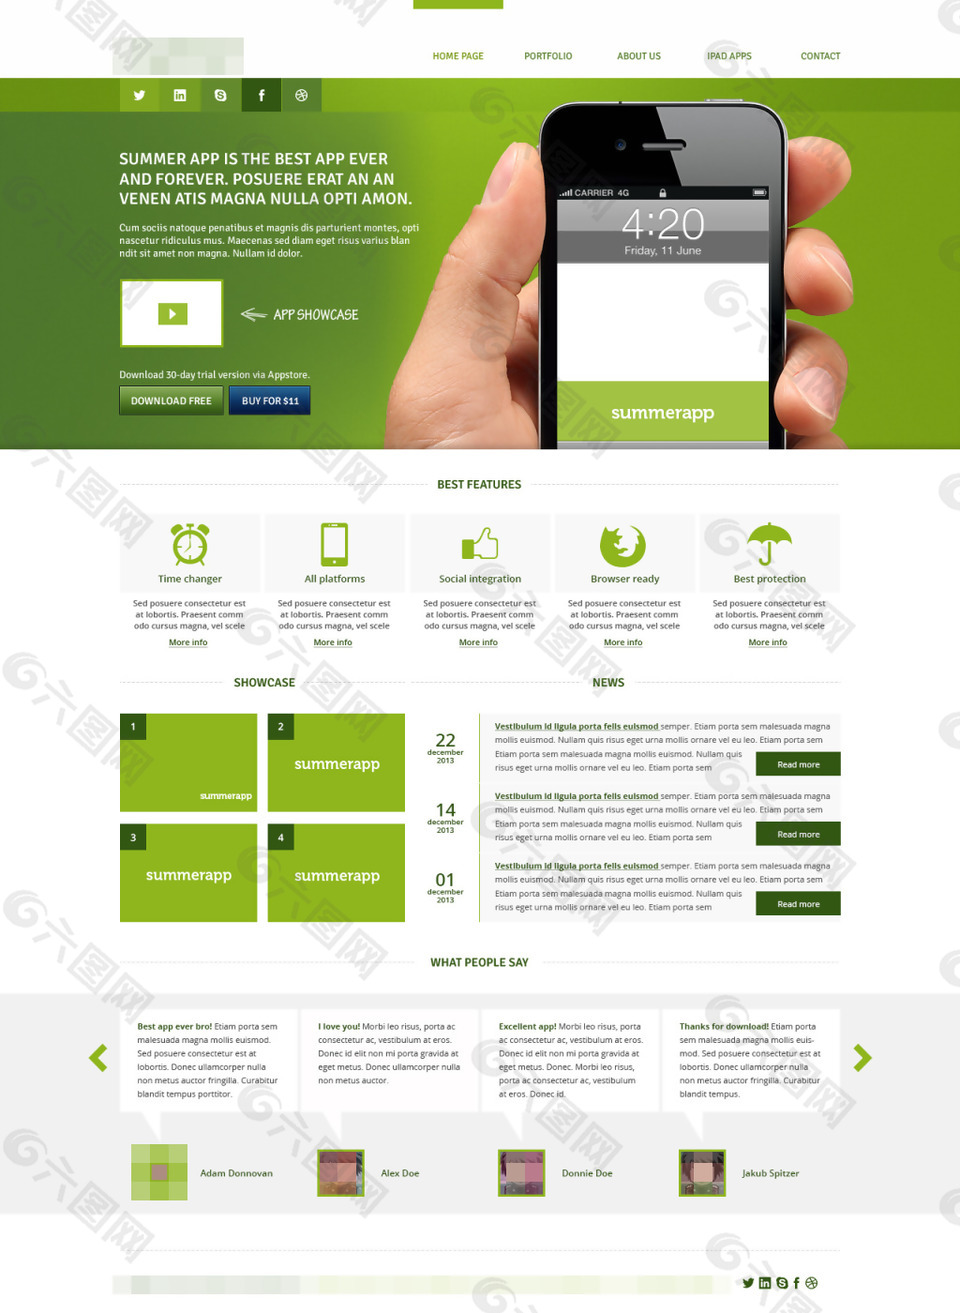 绿色科技IT网站模板设计